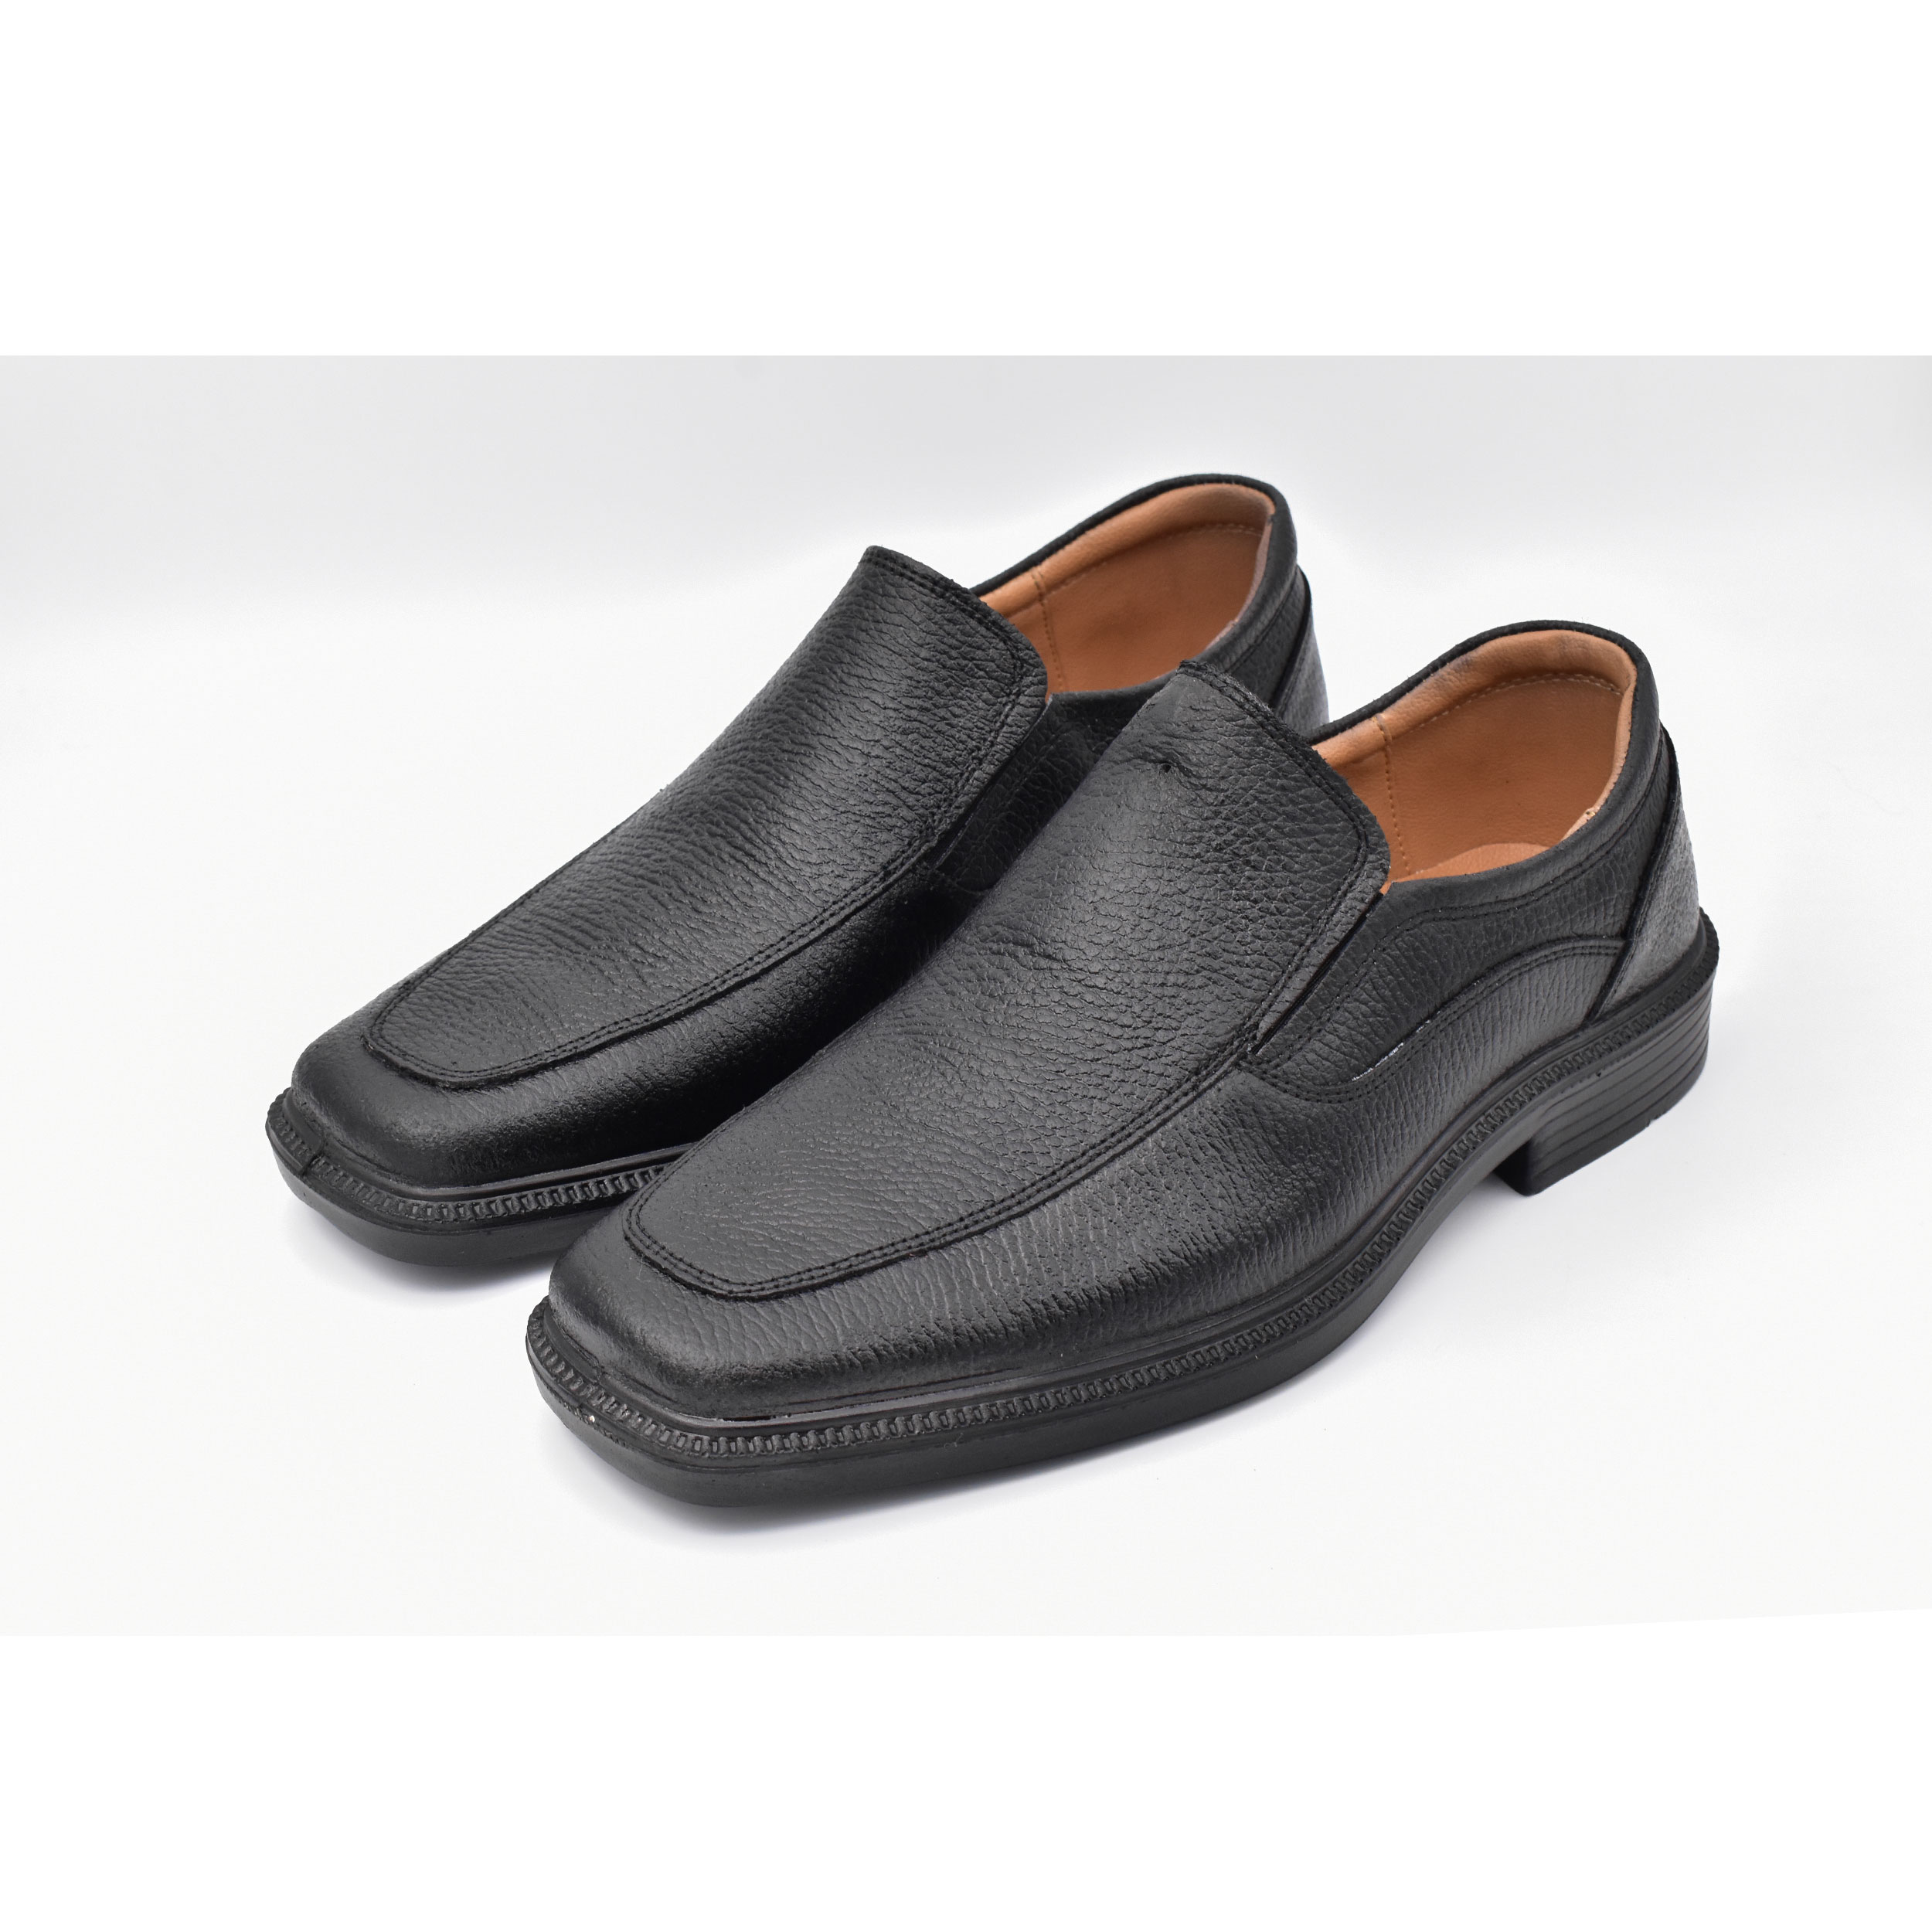 کفش مردانه پاما مدل Skit کد G1359 -  - 6